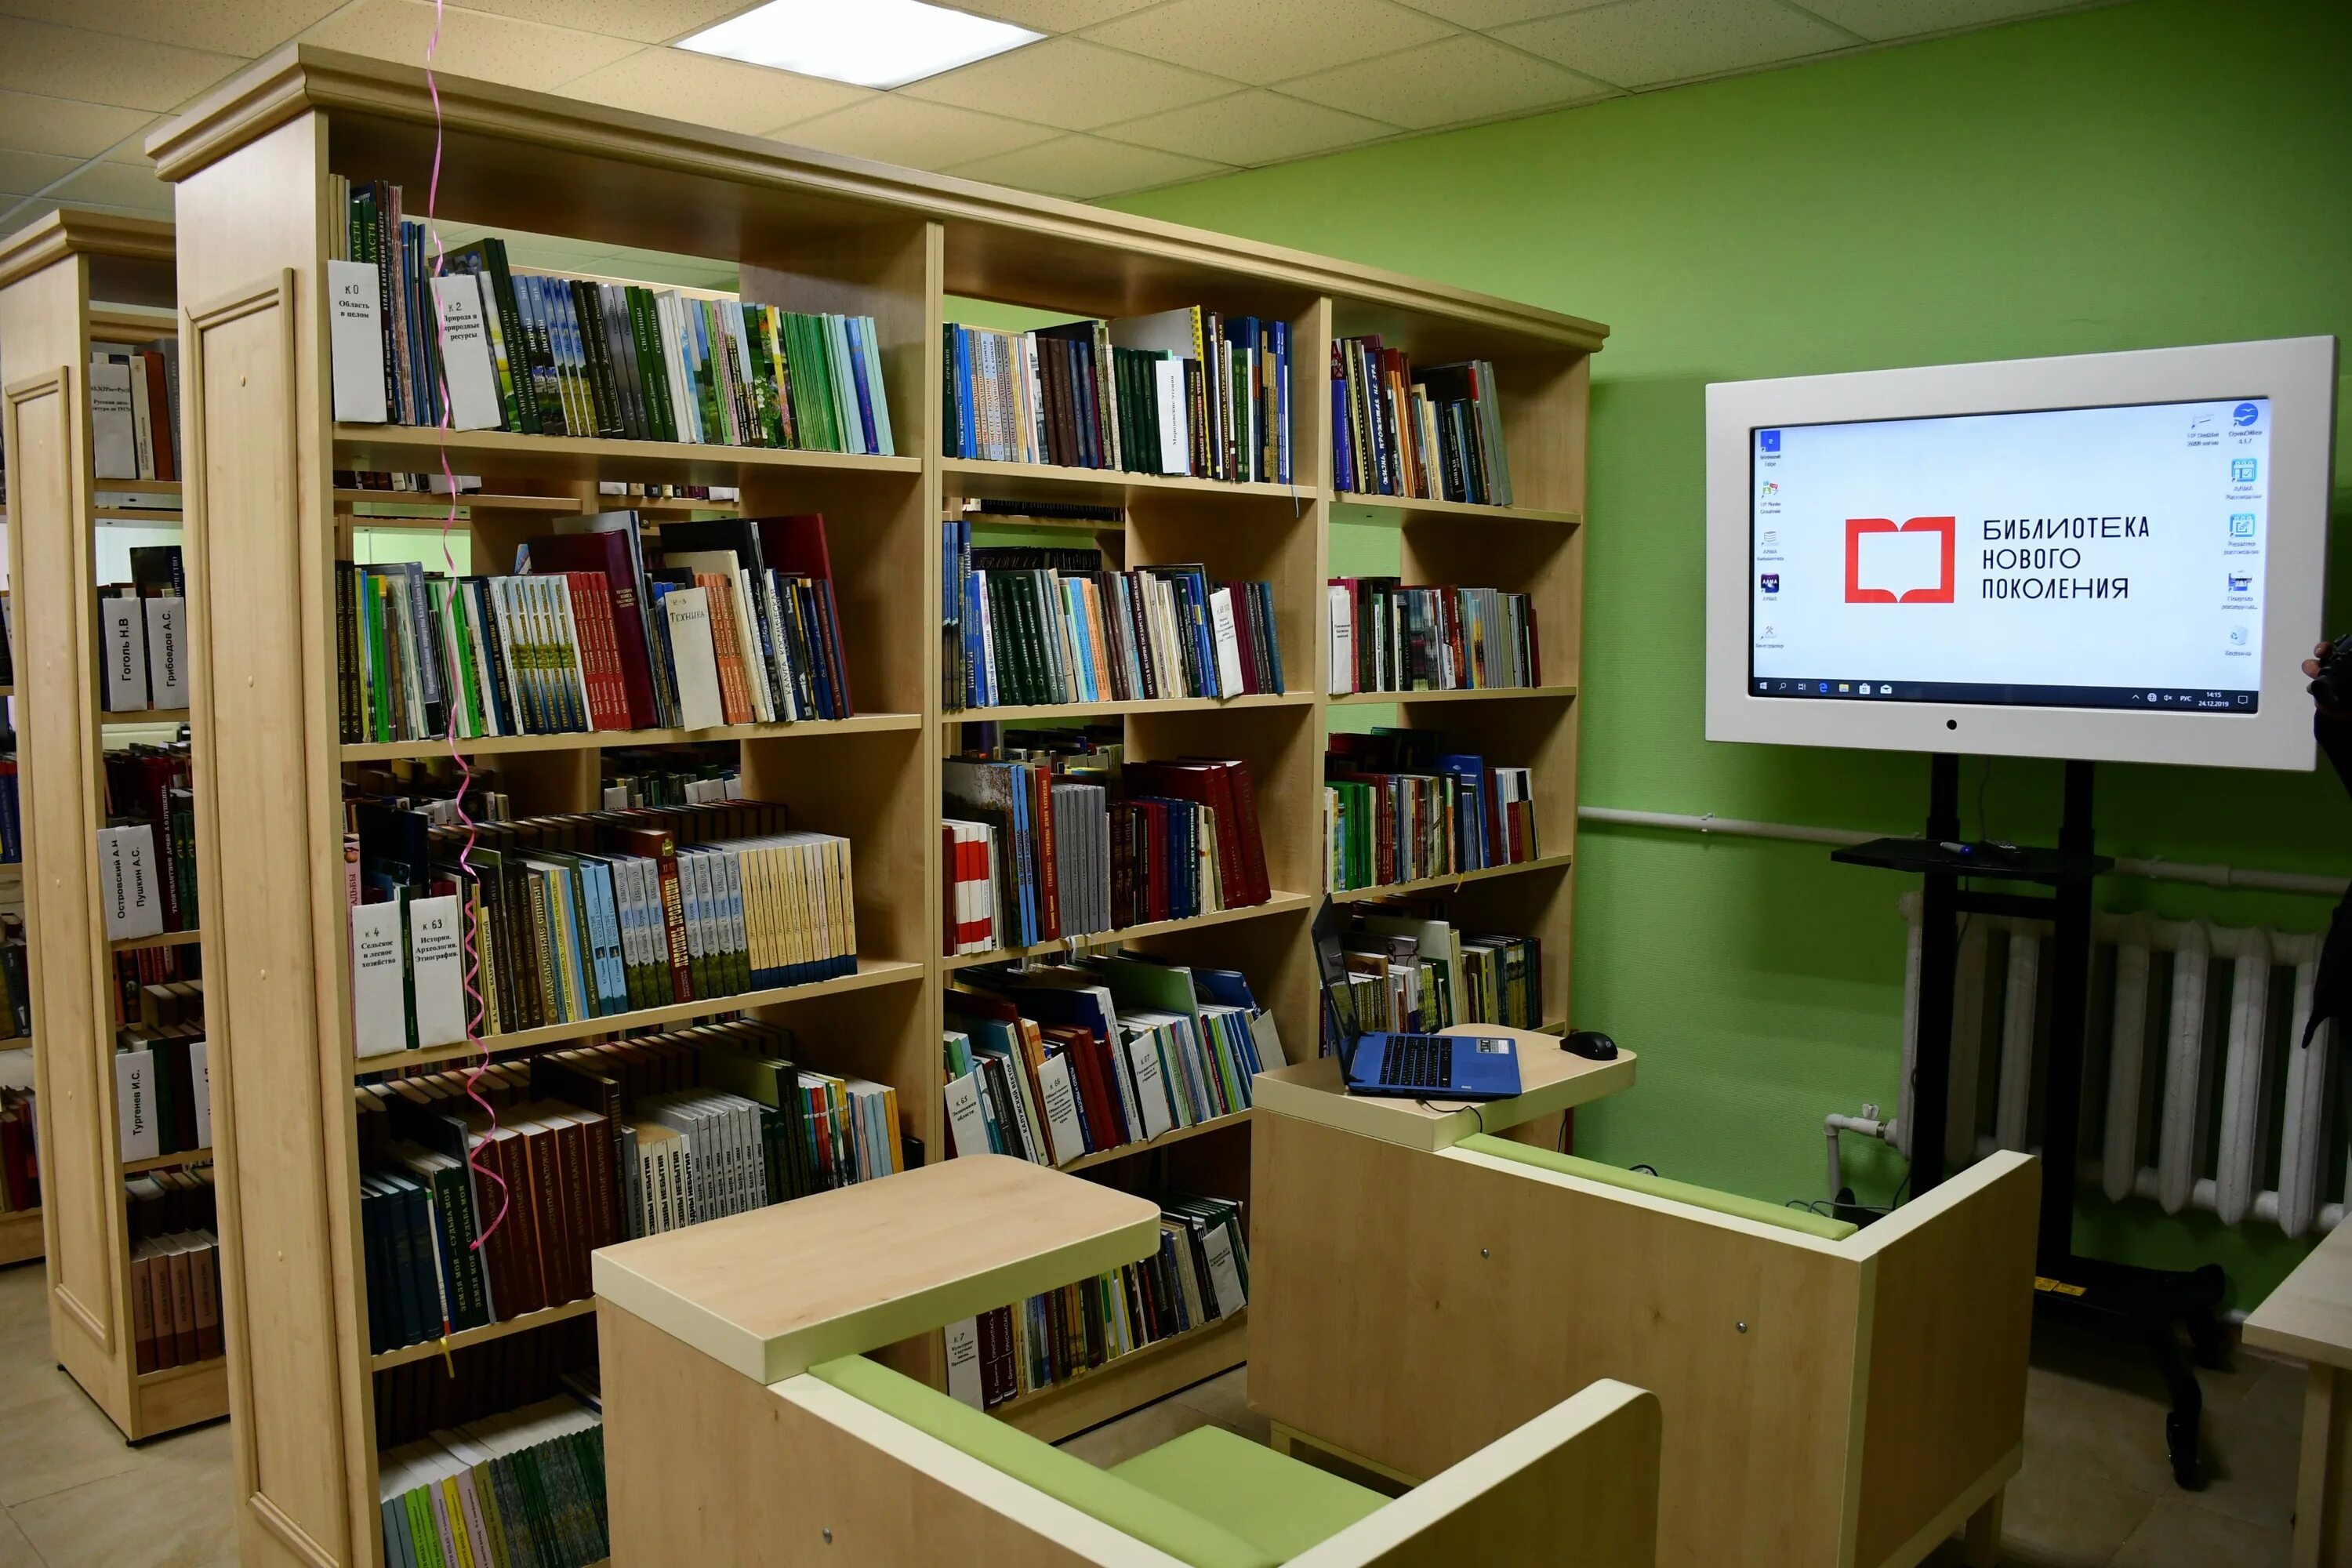 Библиотеки в новых условиях. Модельная библиотека. Библиотека нового поколения. Муниципальная библиотека. Современная Российская библиотека.